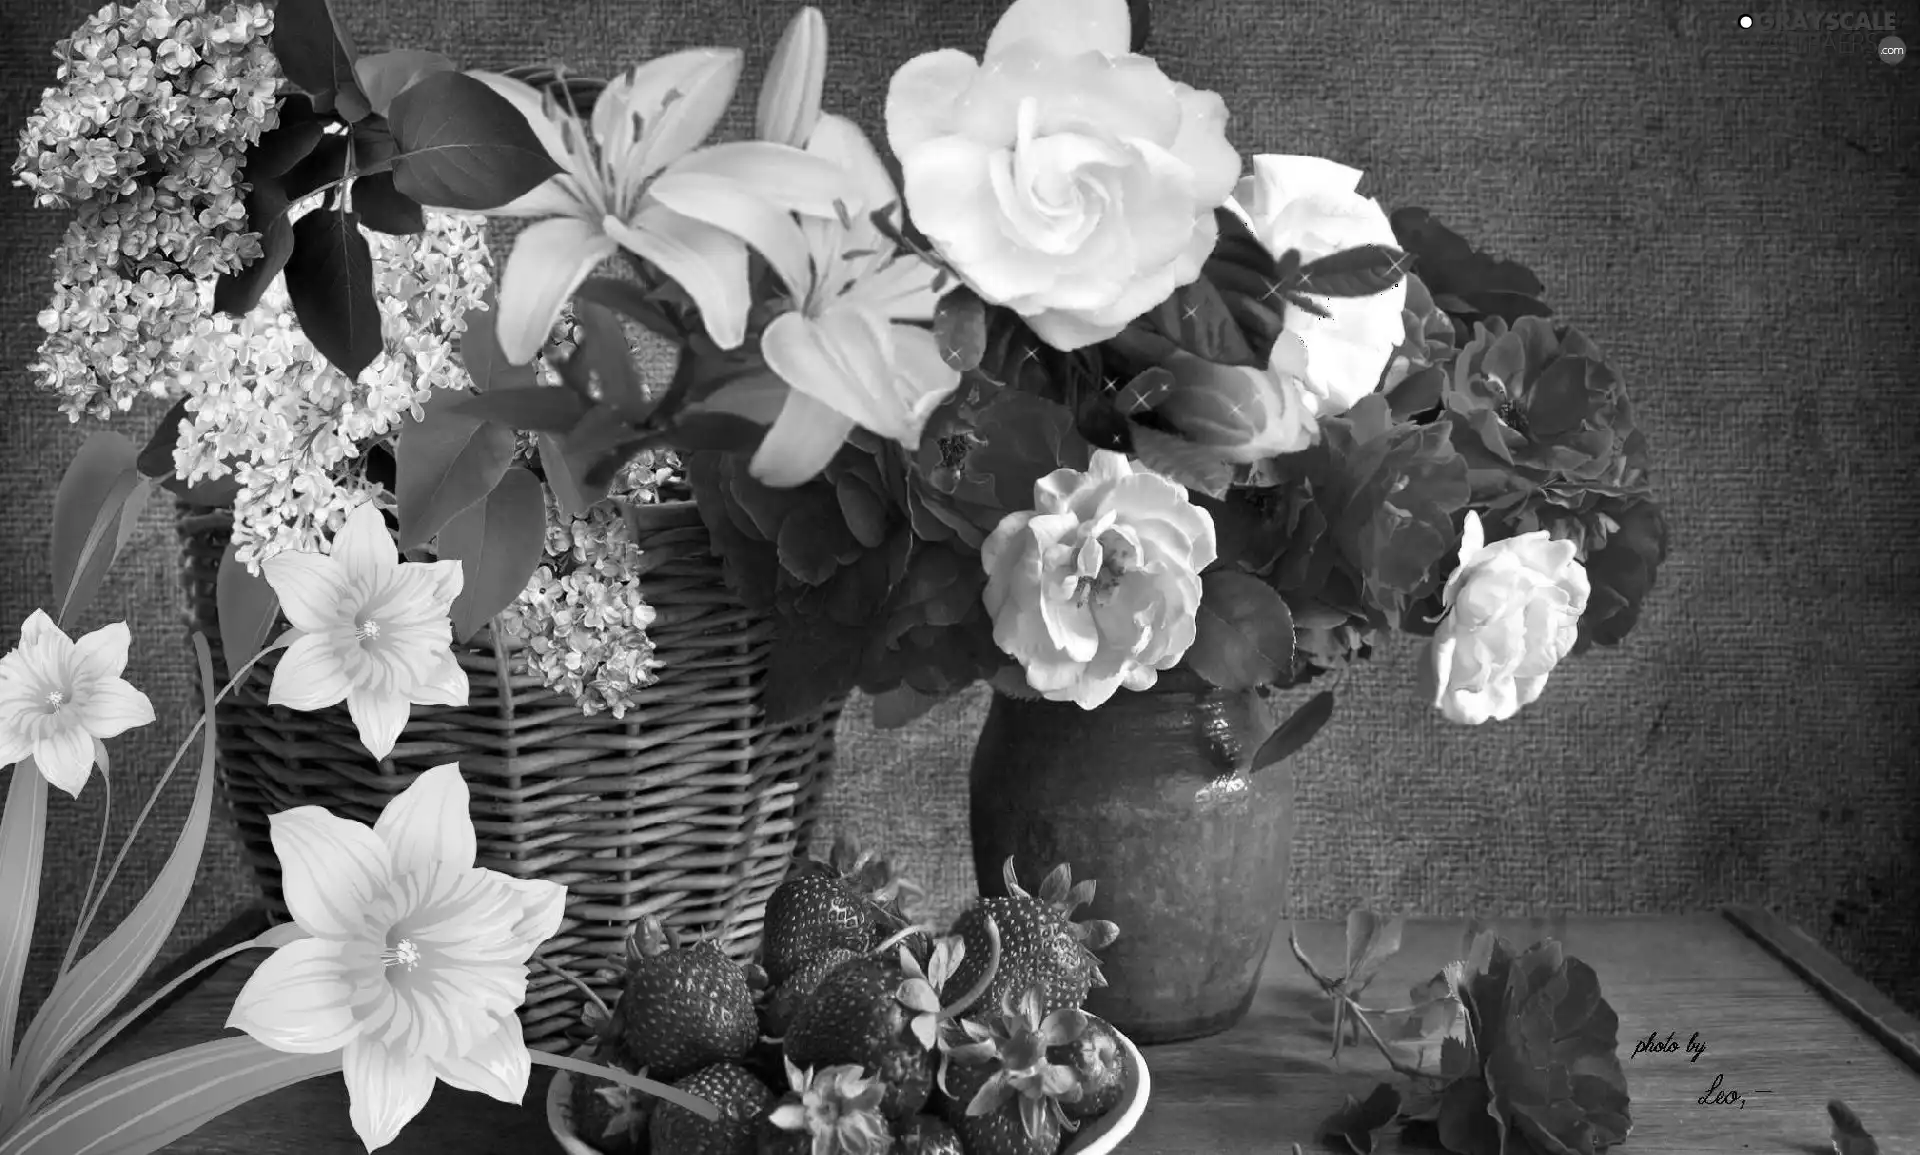 Flowers, basket, Vase, strawberries